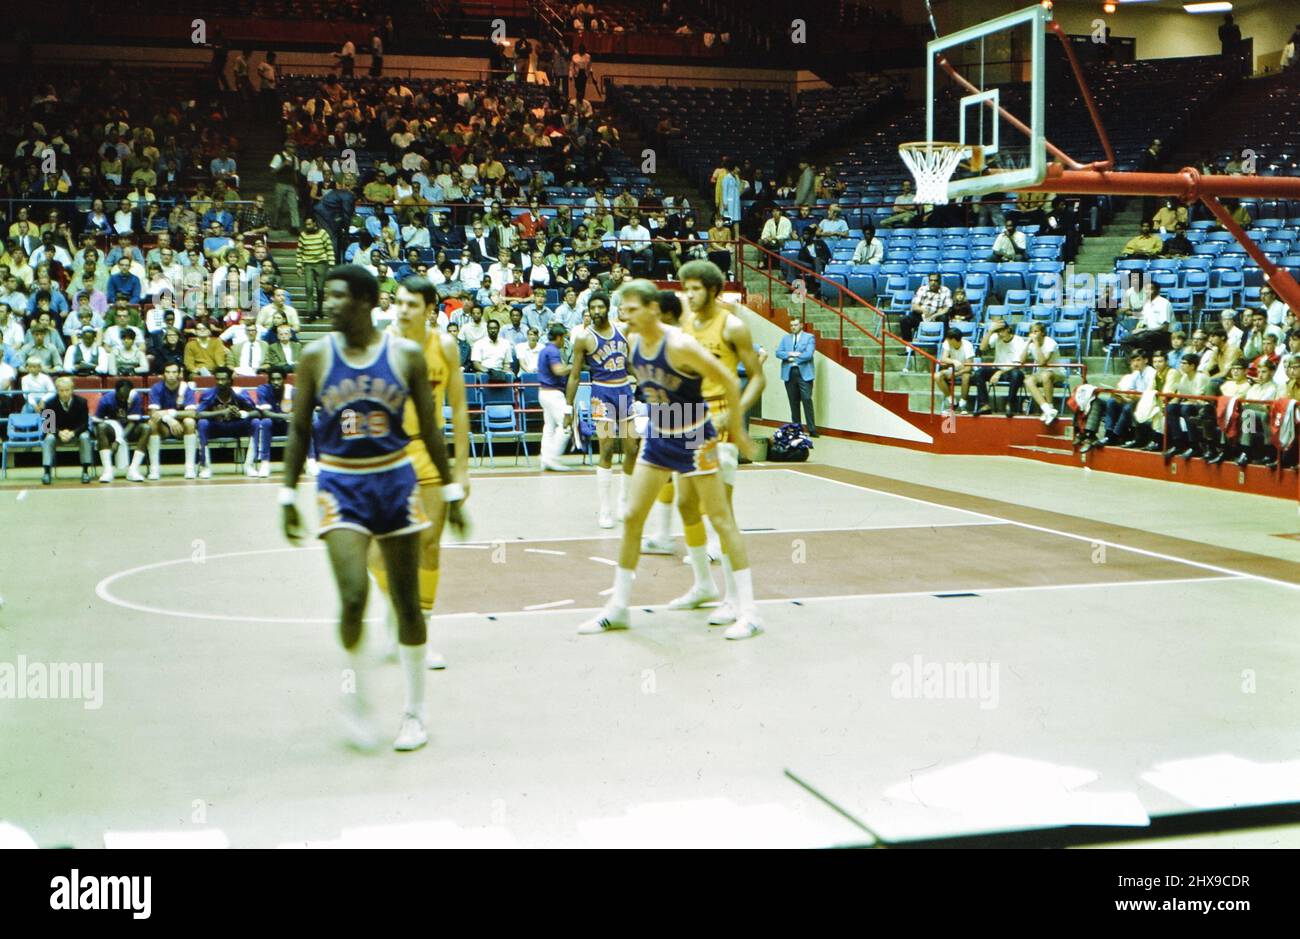 Phoenix Suns vs. Cleveland Cavaliers NBA-Basketballspiel, möglicherweise ein Ausstellungsspiel in Dayton ca. 1970 Stockfoto